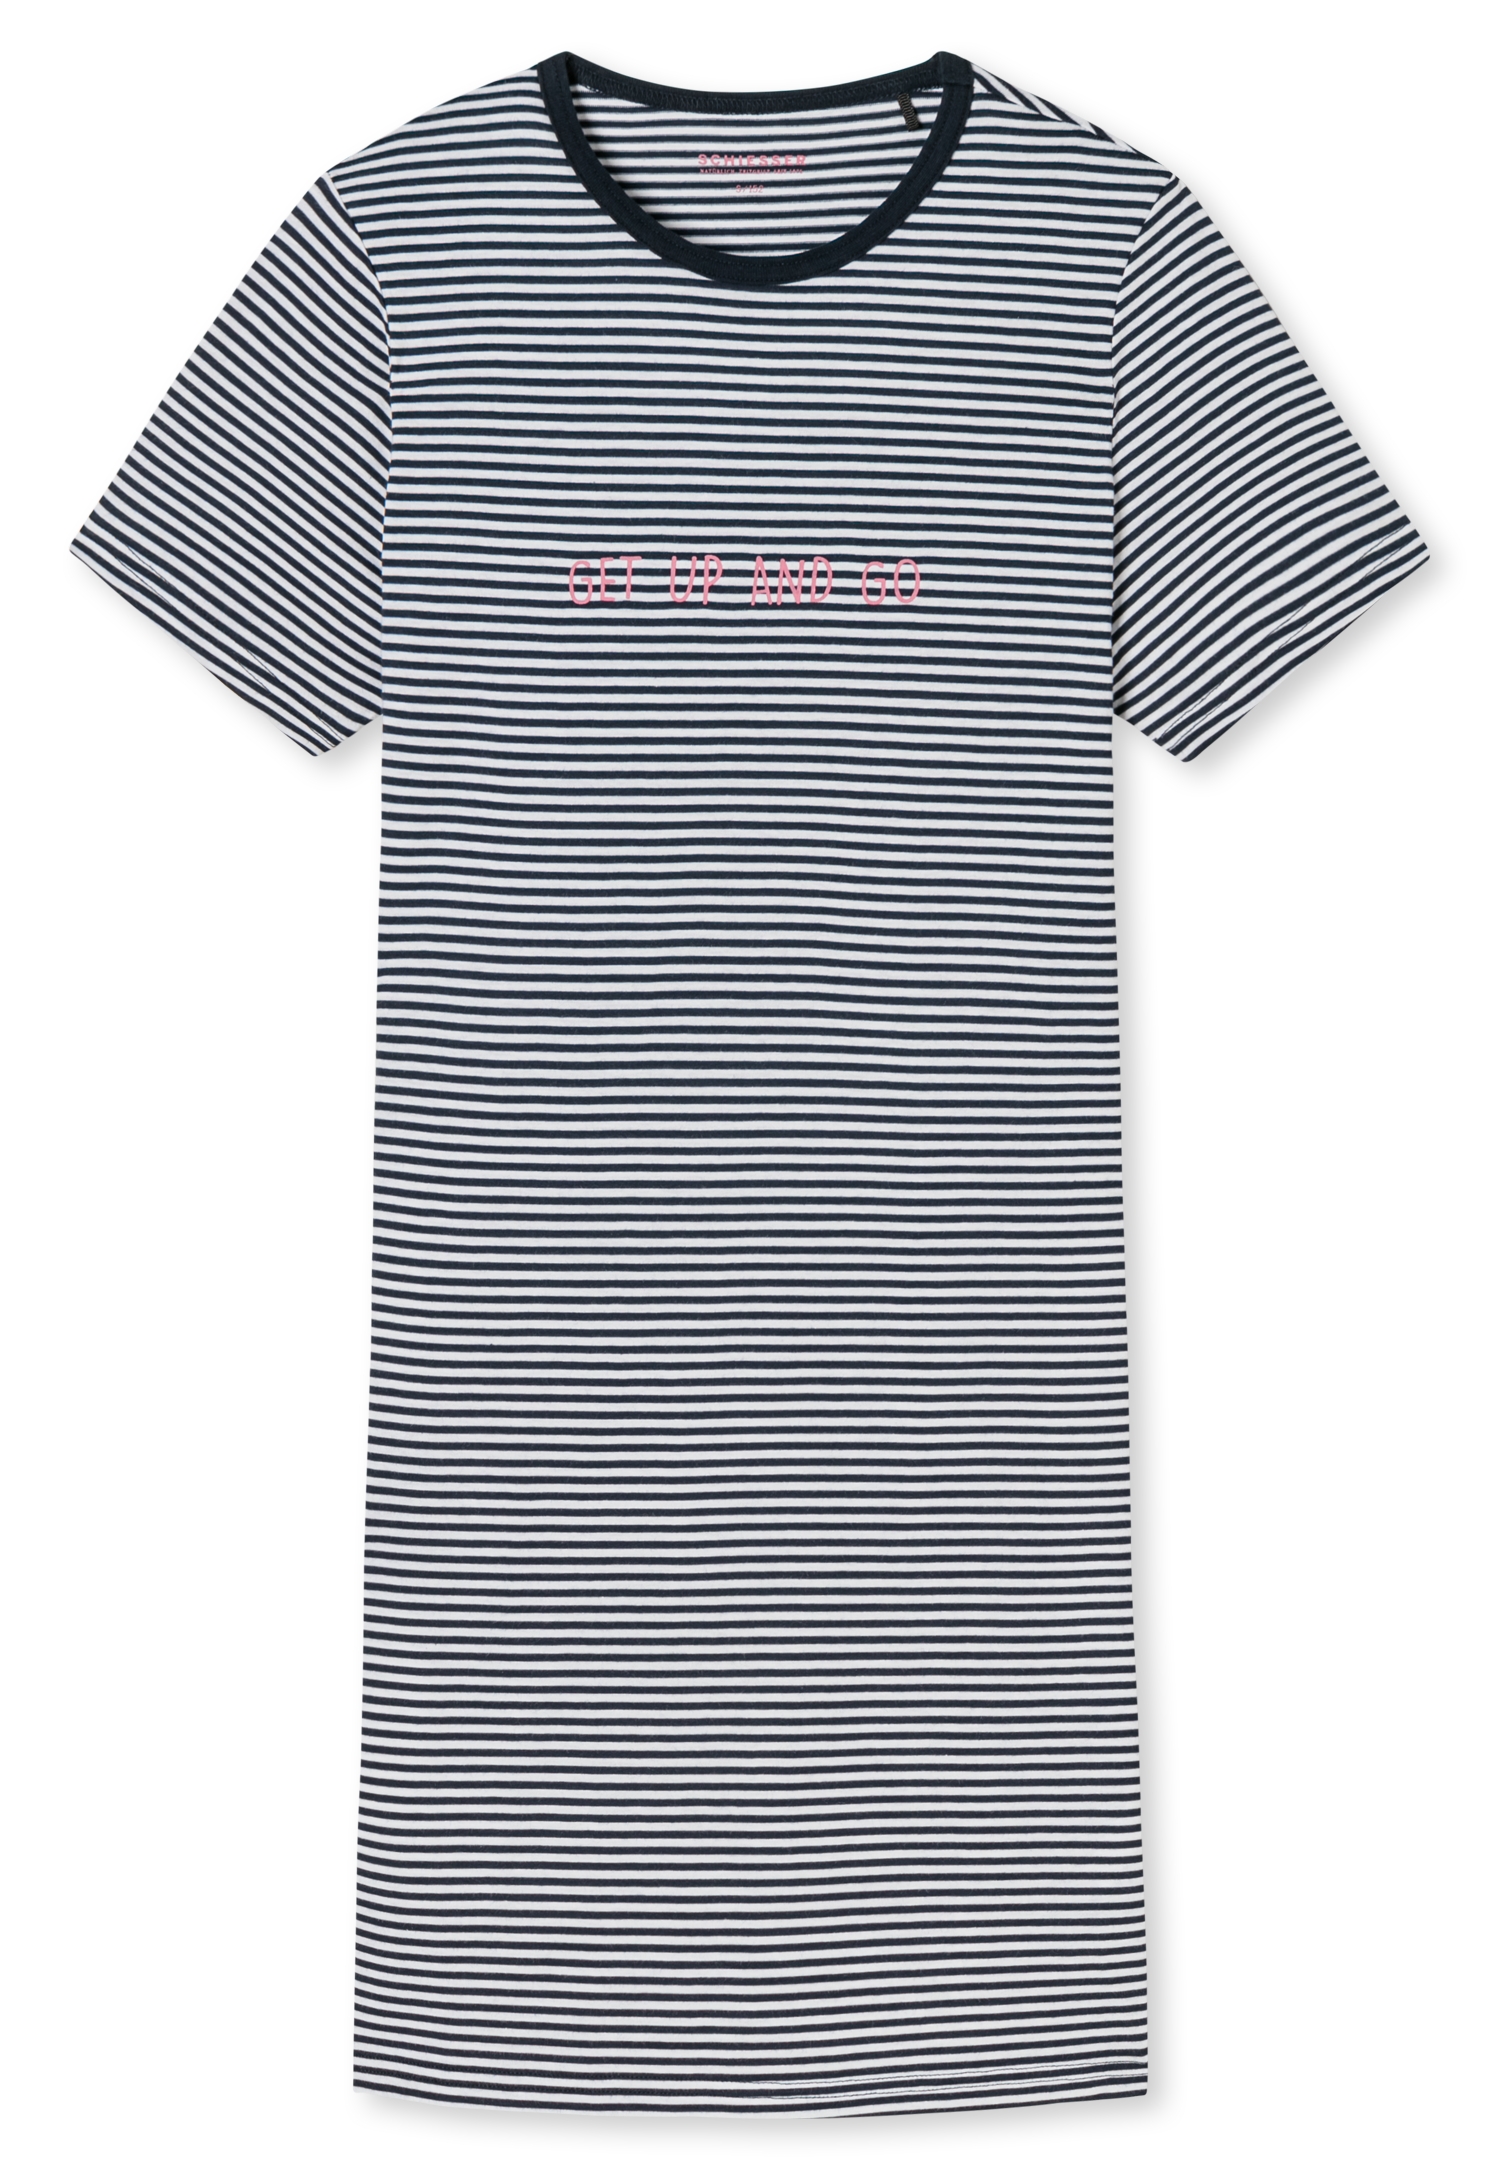 REDUZIERT Sanetta  Shirt T-Shirt Sleepshirt  Mädchen Gr.140-176 NEU